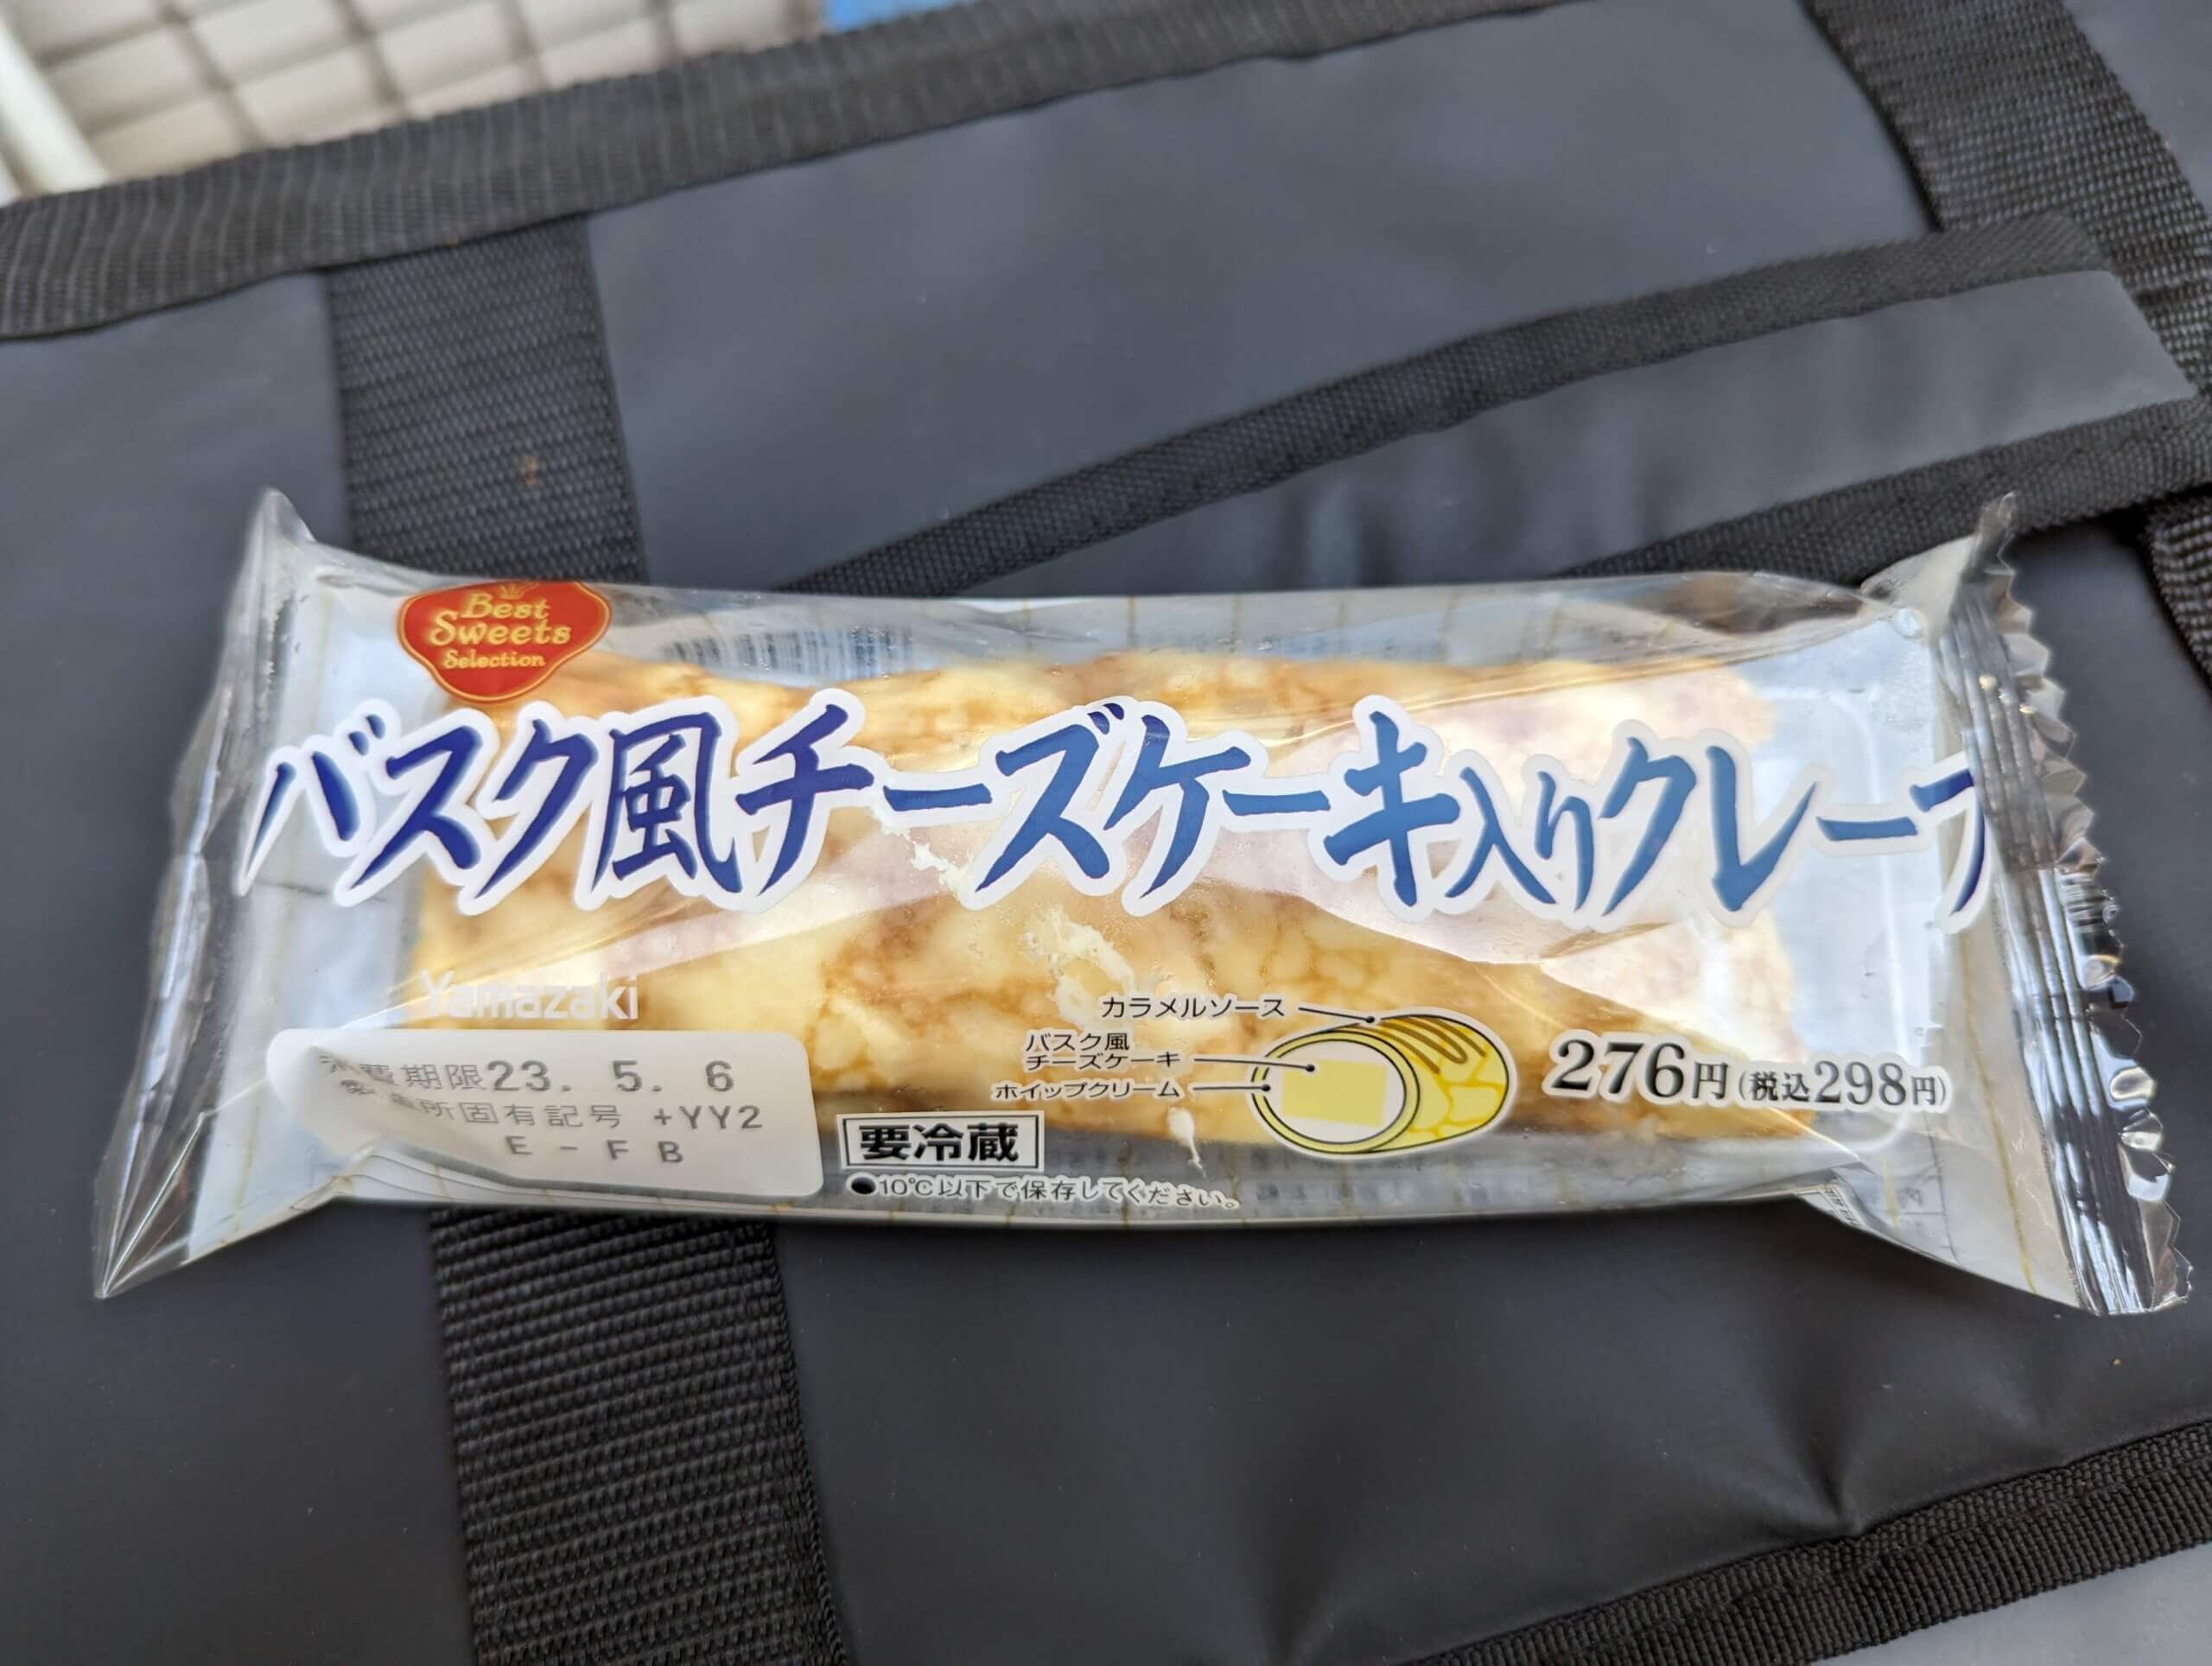 山崎製パン・バスク風チーズケーキ入りクレープ (1)